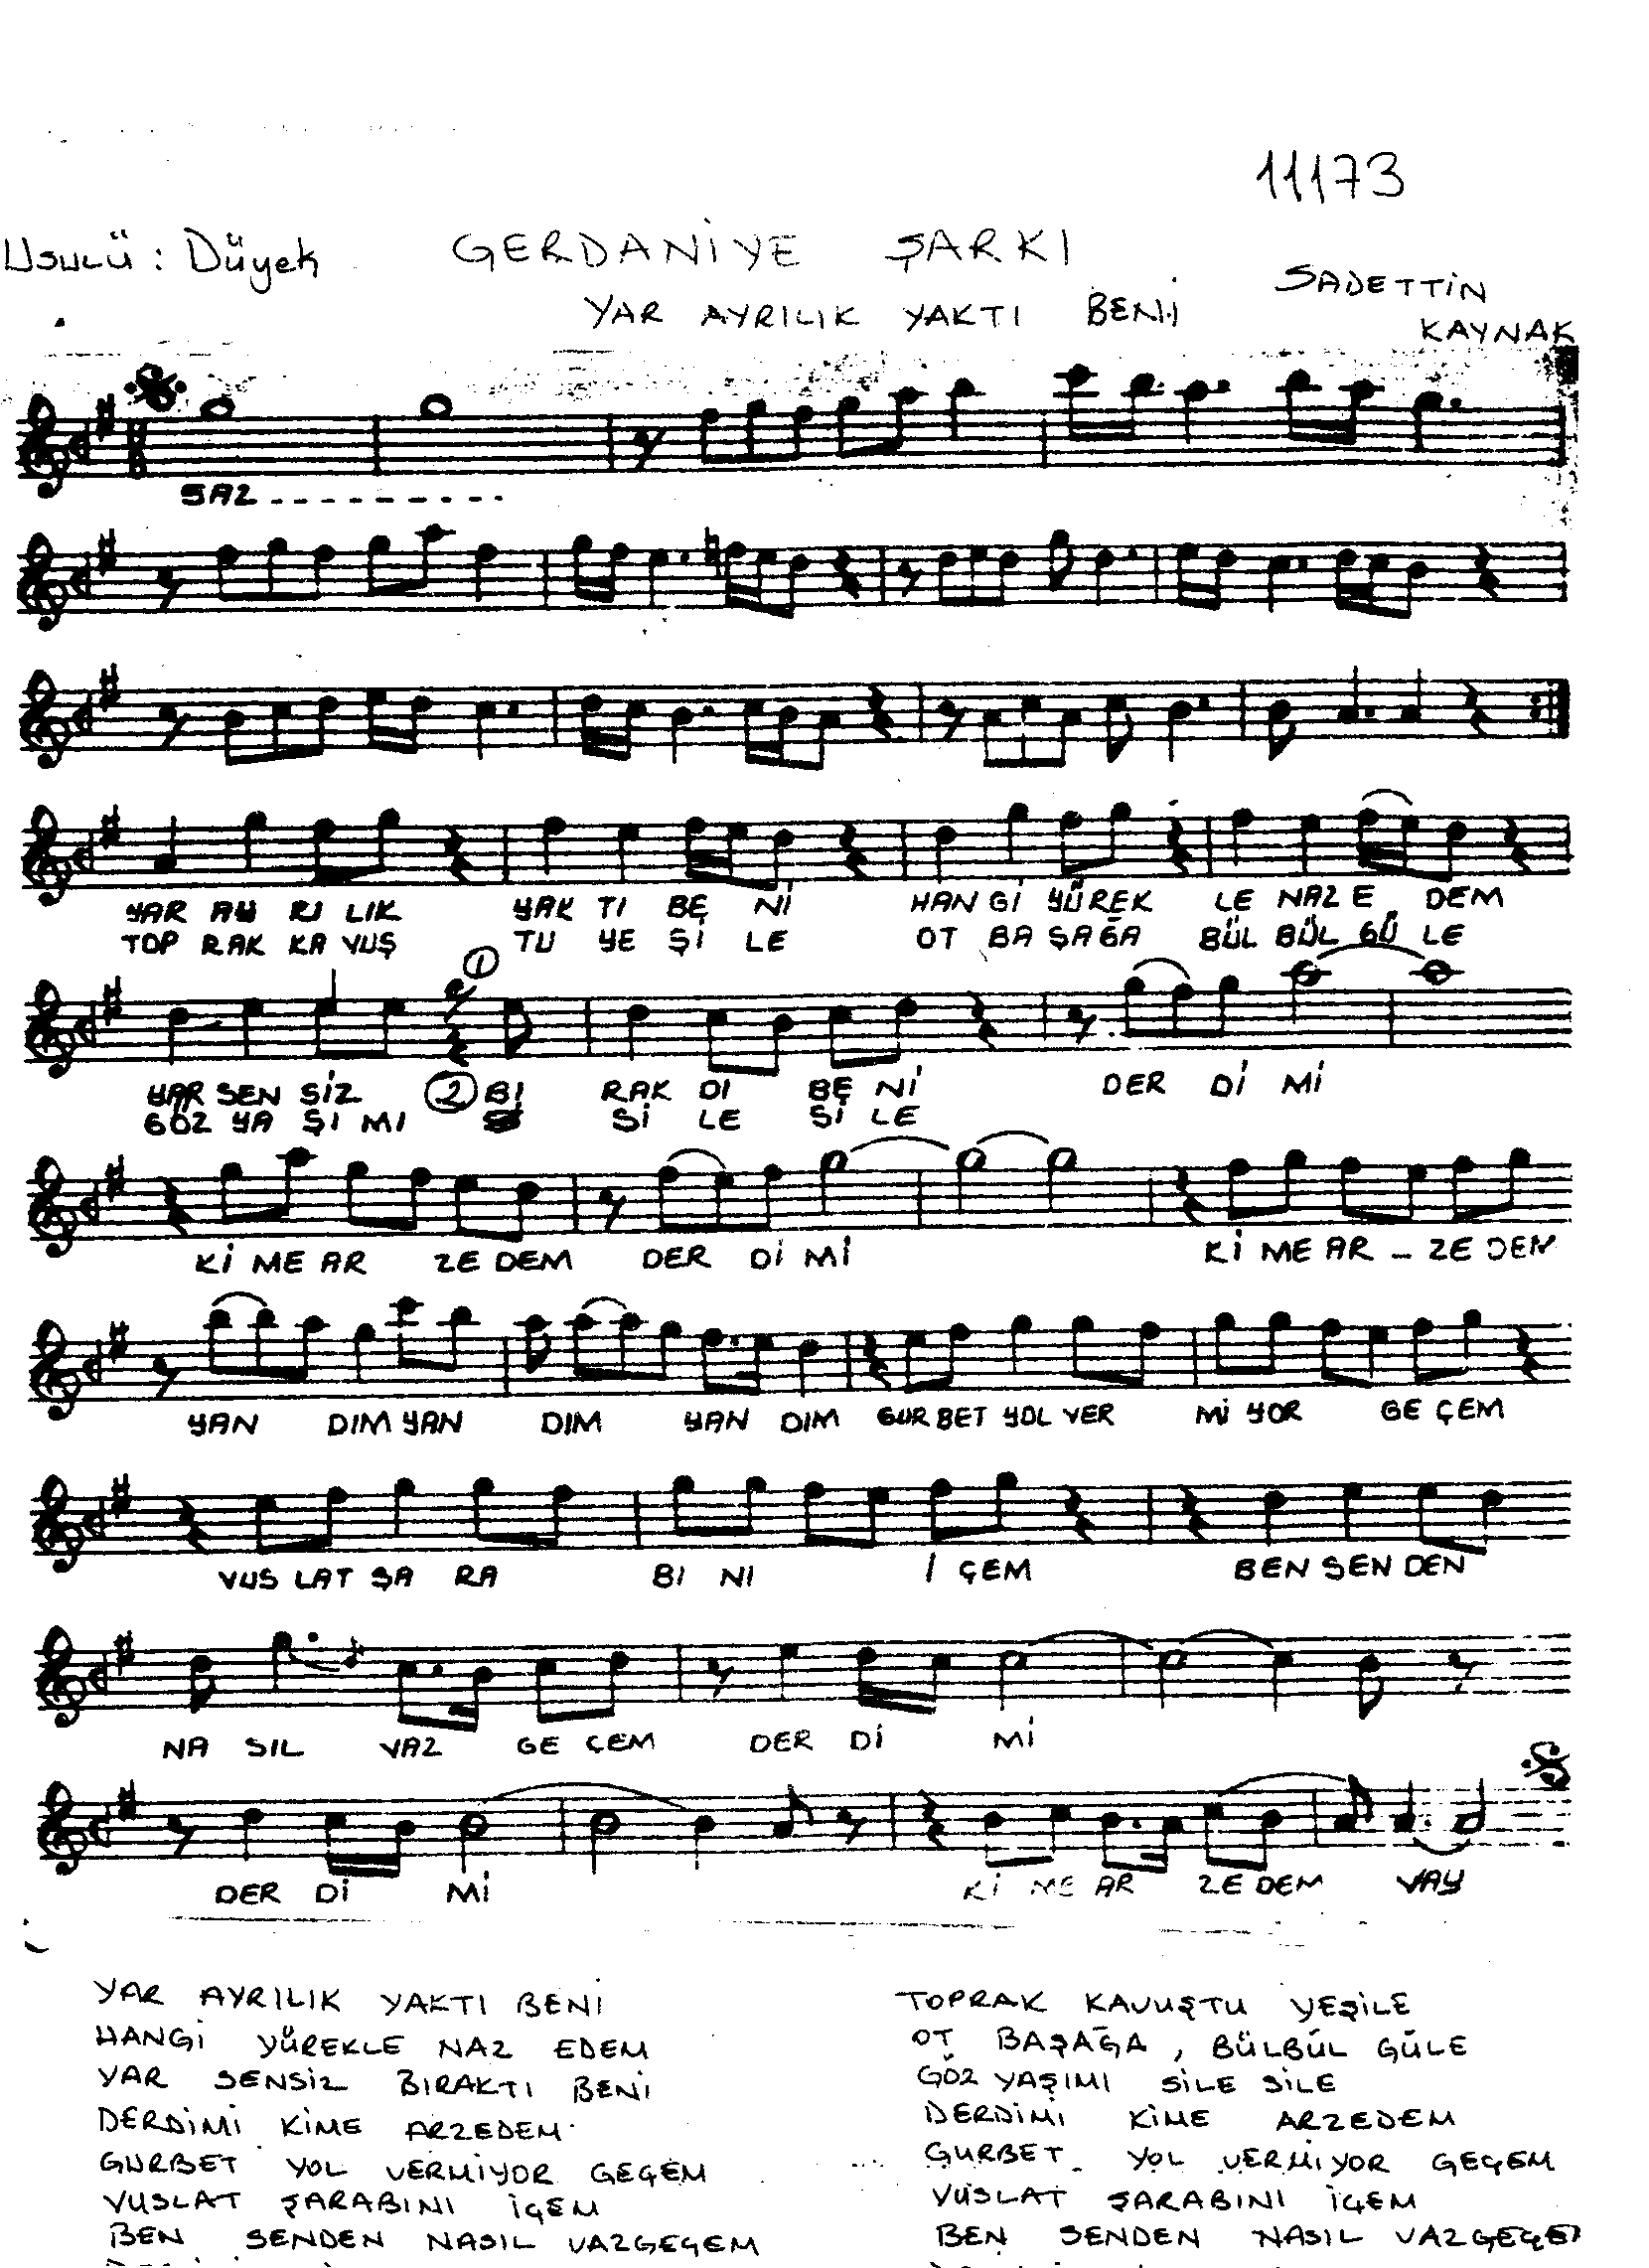 Gerdâniye - Şarkı - Sadettin Kaynak - Sayfa 1